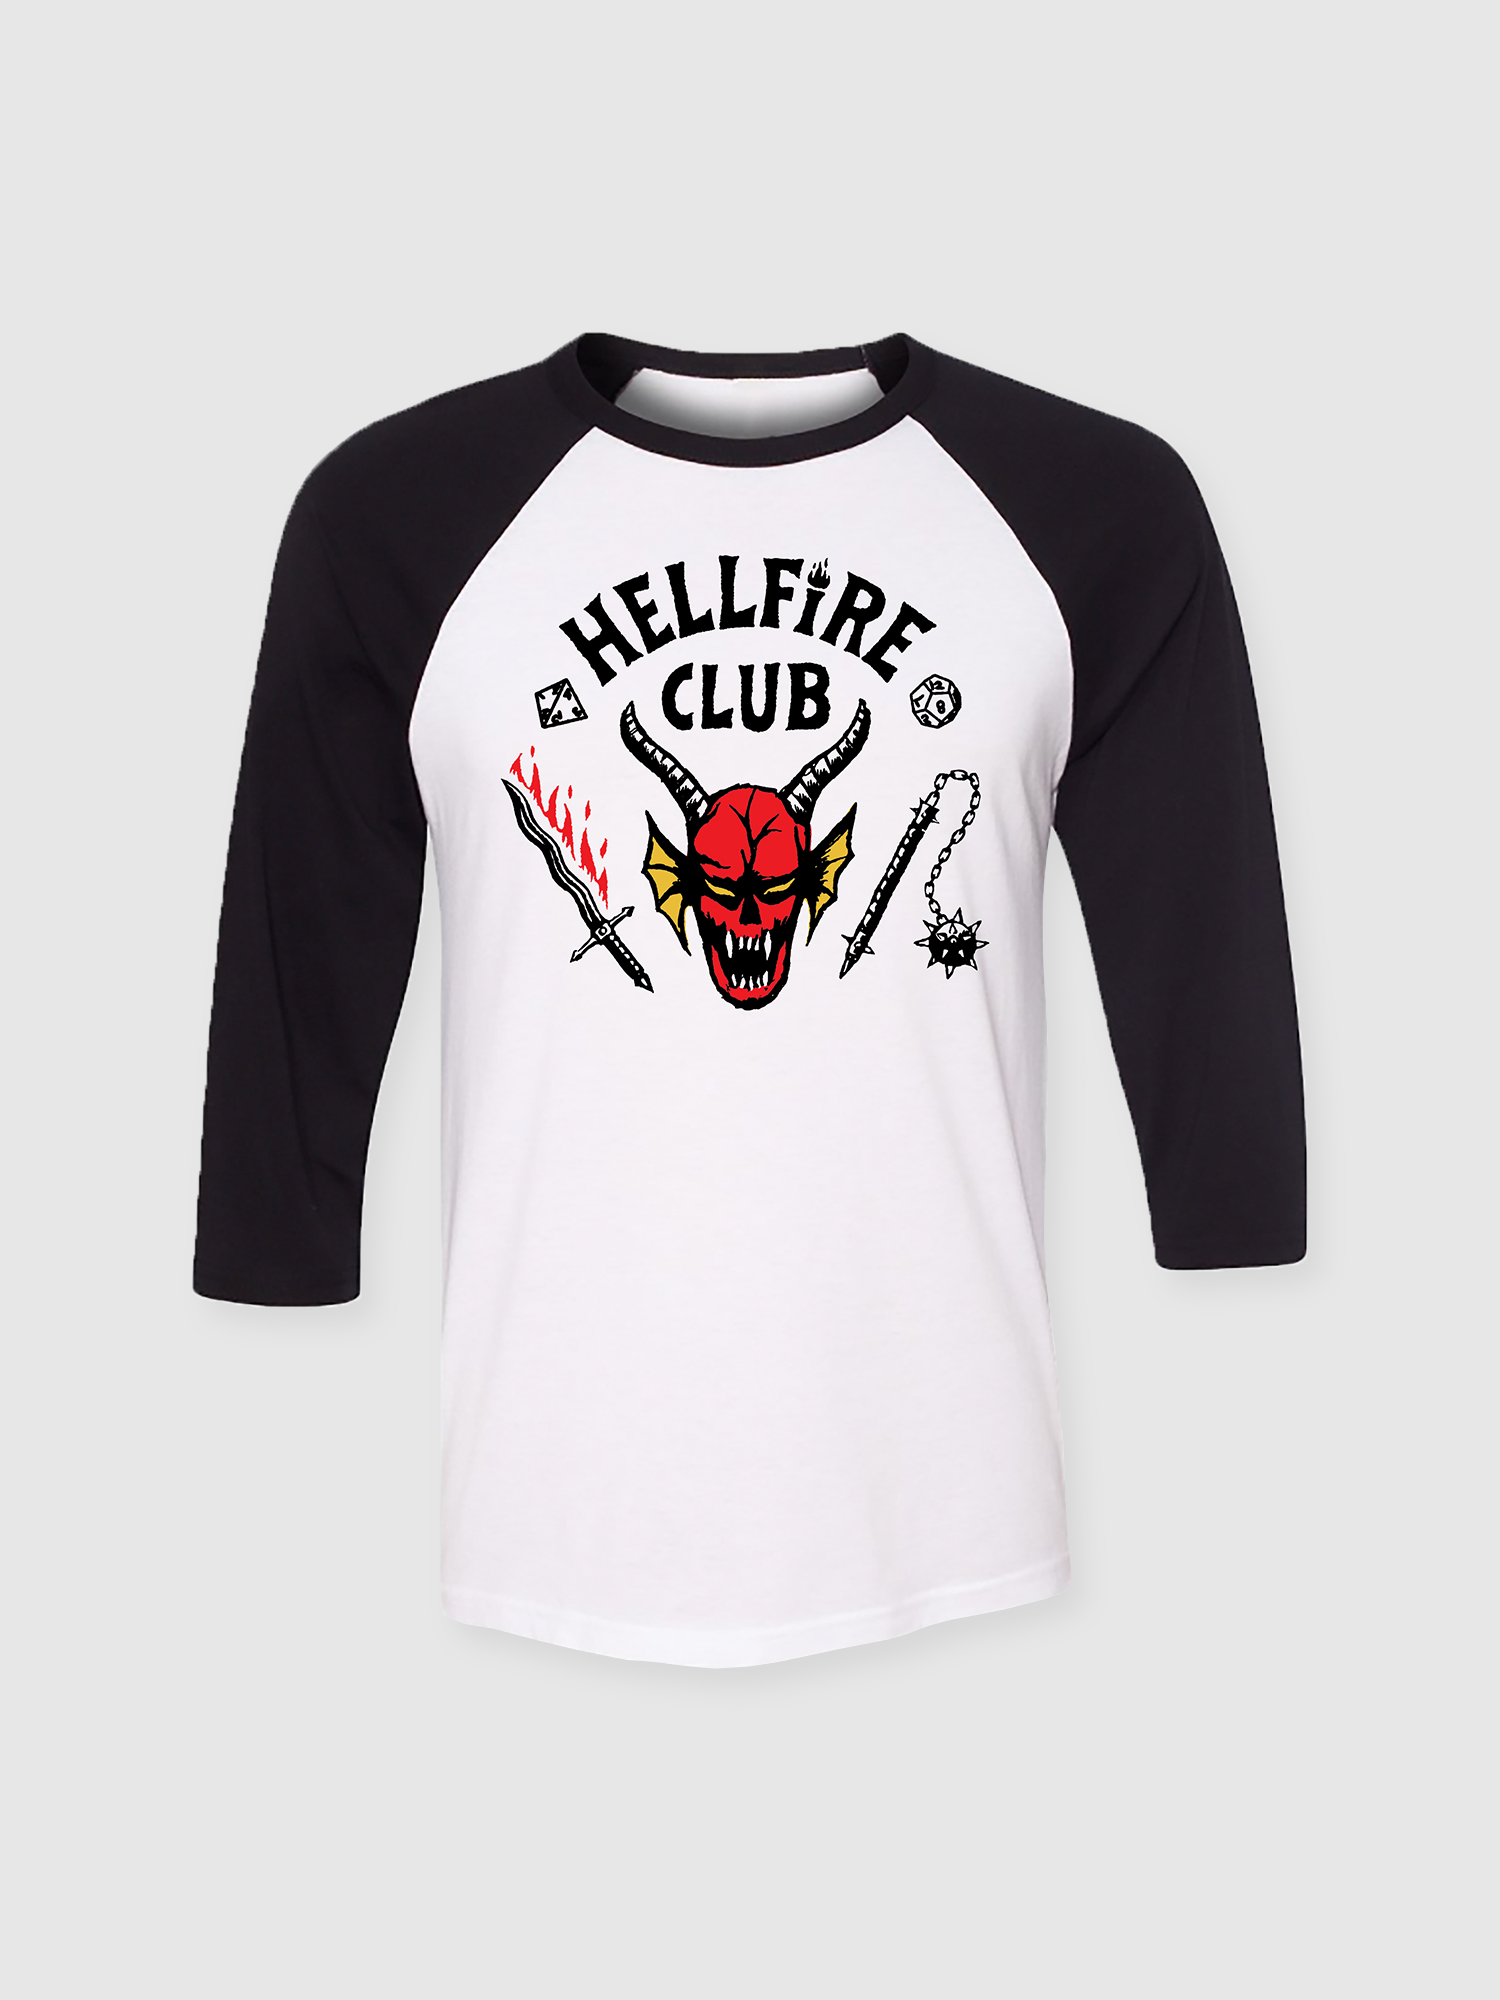 Dustin Hellfire Club T-Shirt Season 4 Stranger Tops Bangladesh